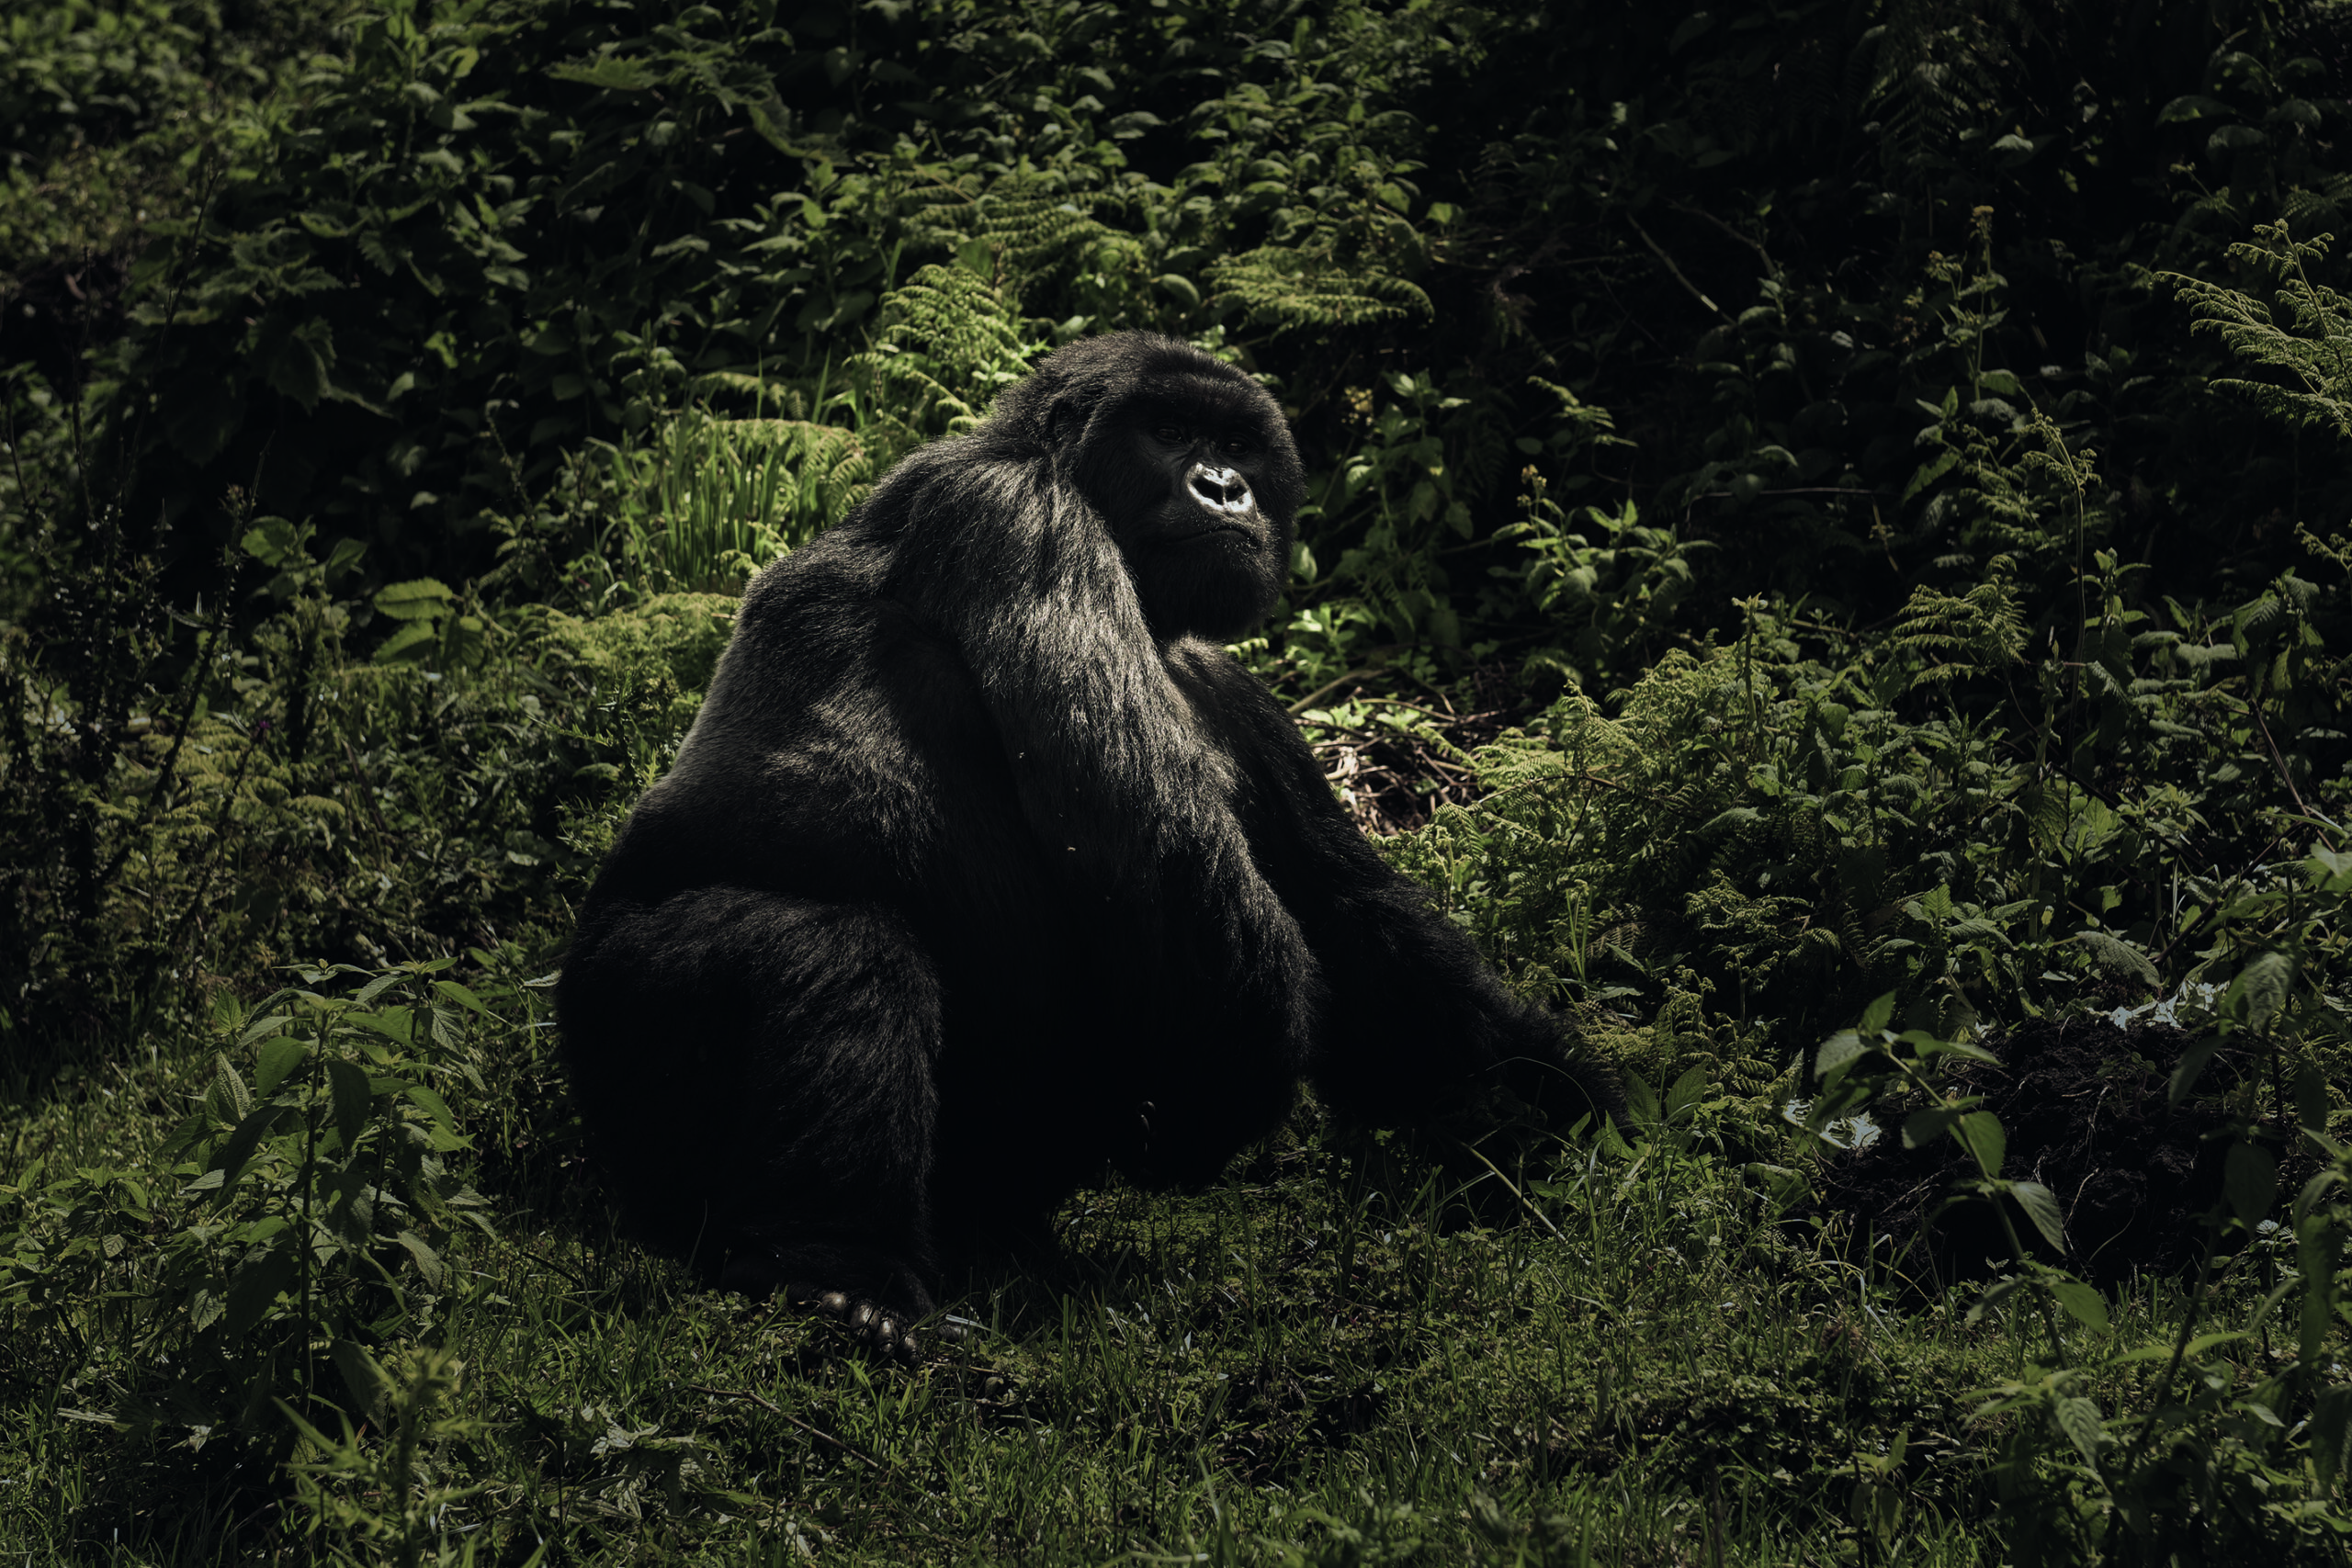 A gorilla amid greenery.